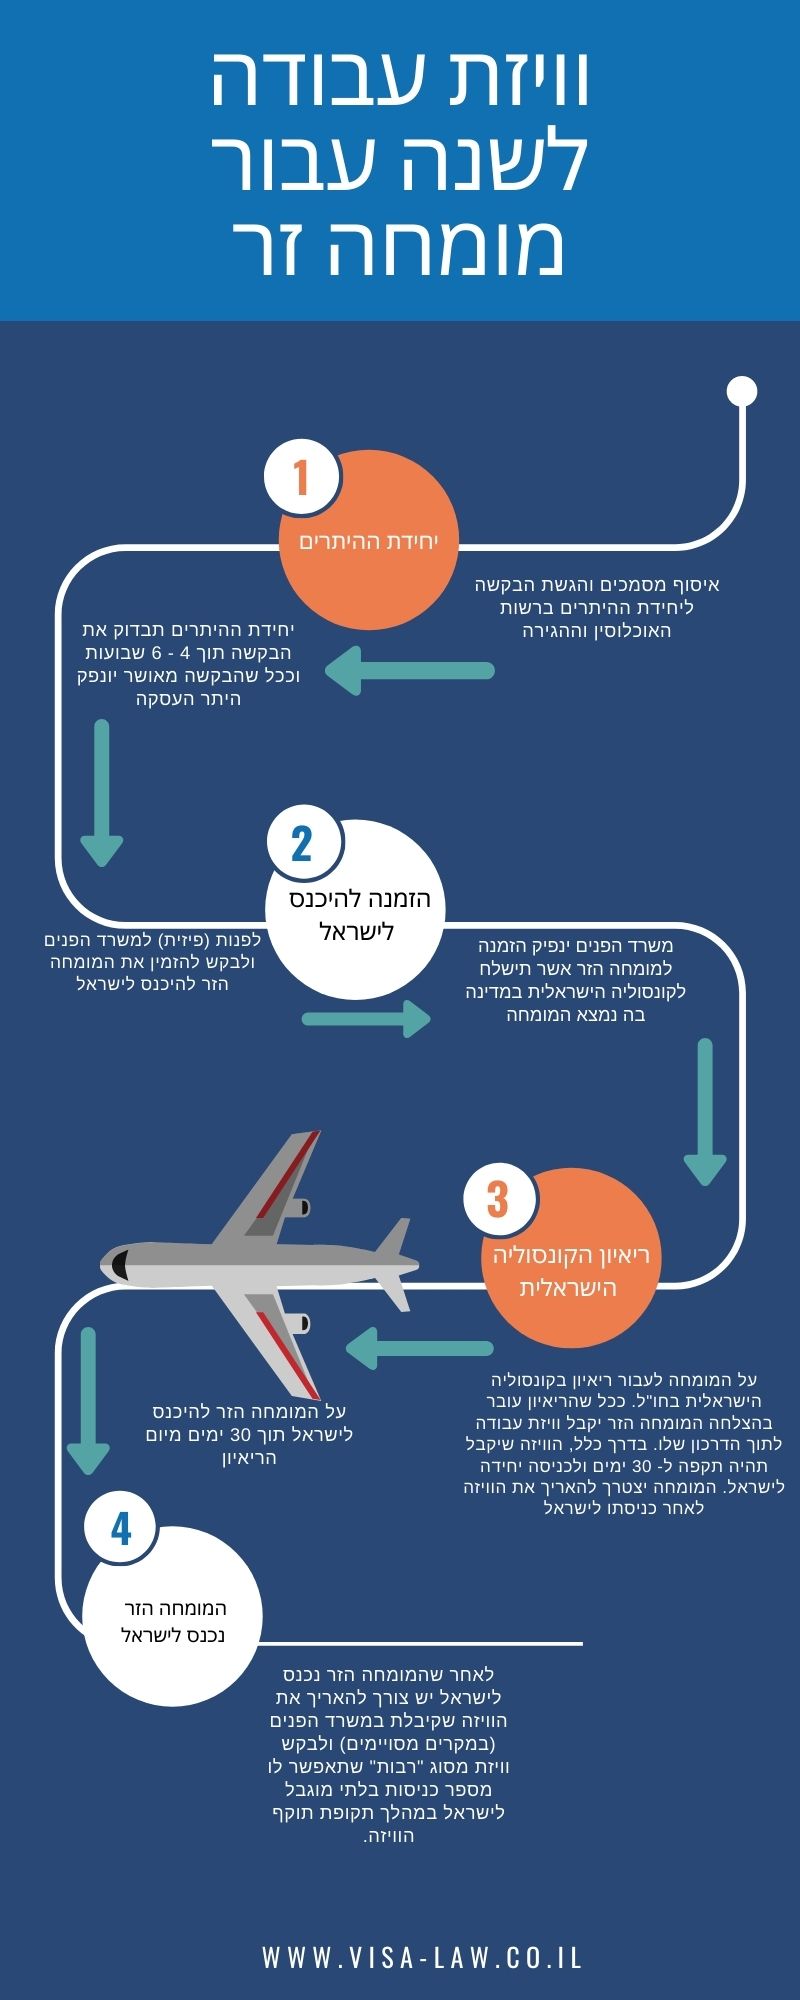 Israeli 1 Year Work Visas - Hebrew